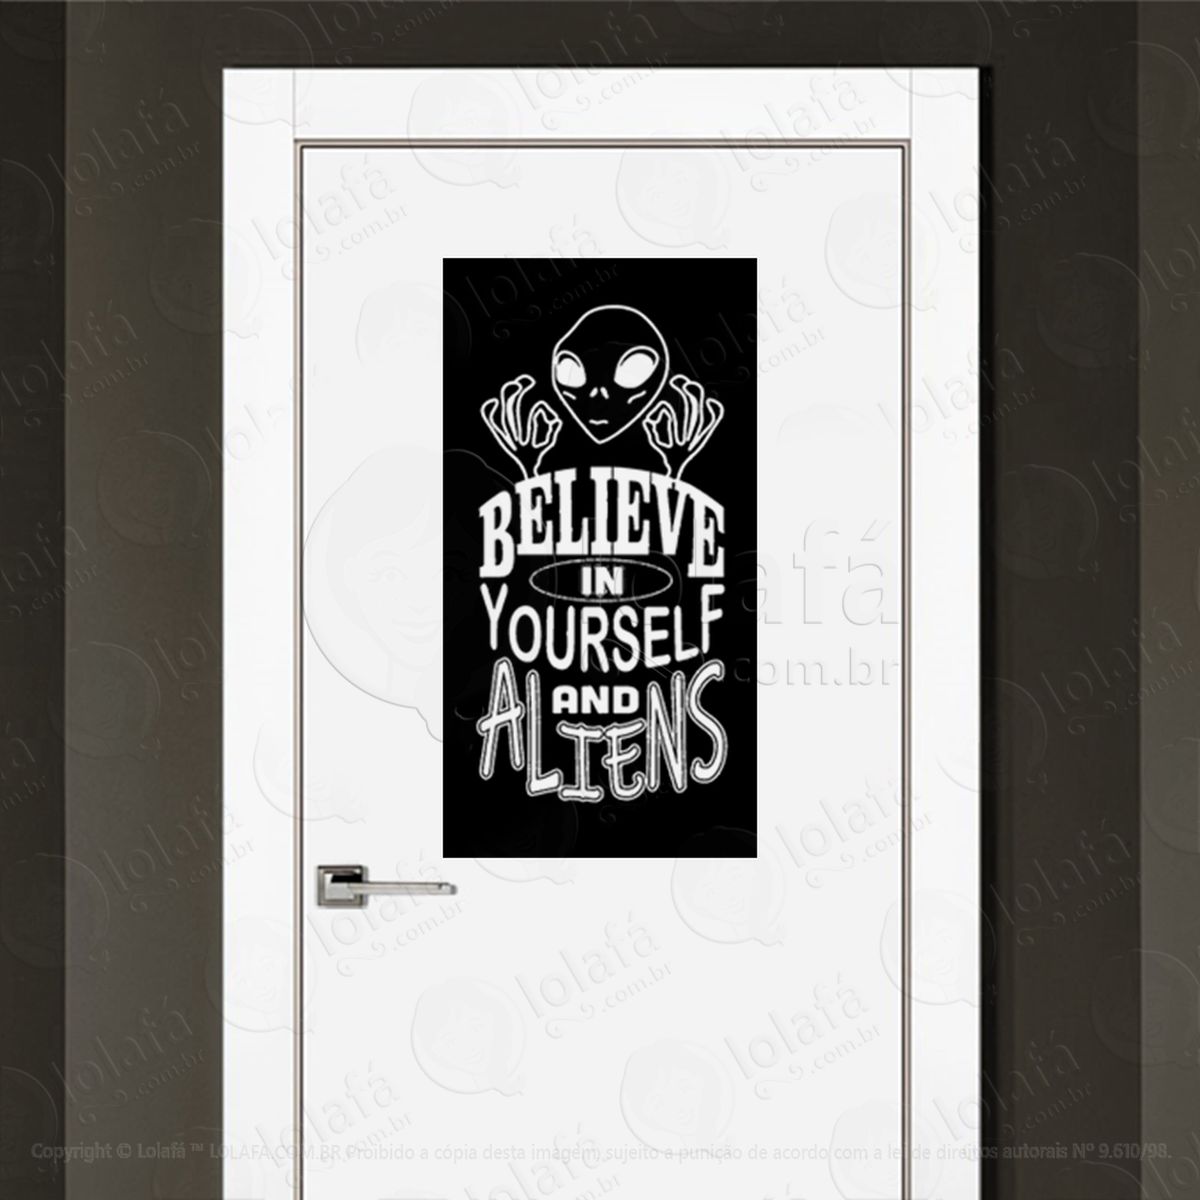 acredite em si mesmo e em aliens adesivo alienígena de parede para quarto, porta e vidro - mod:281